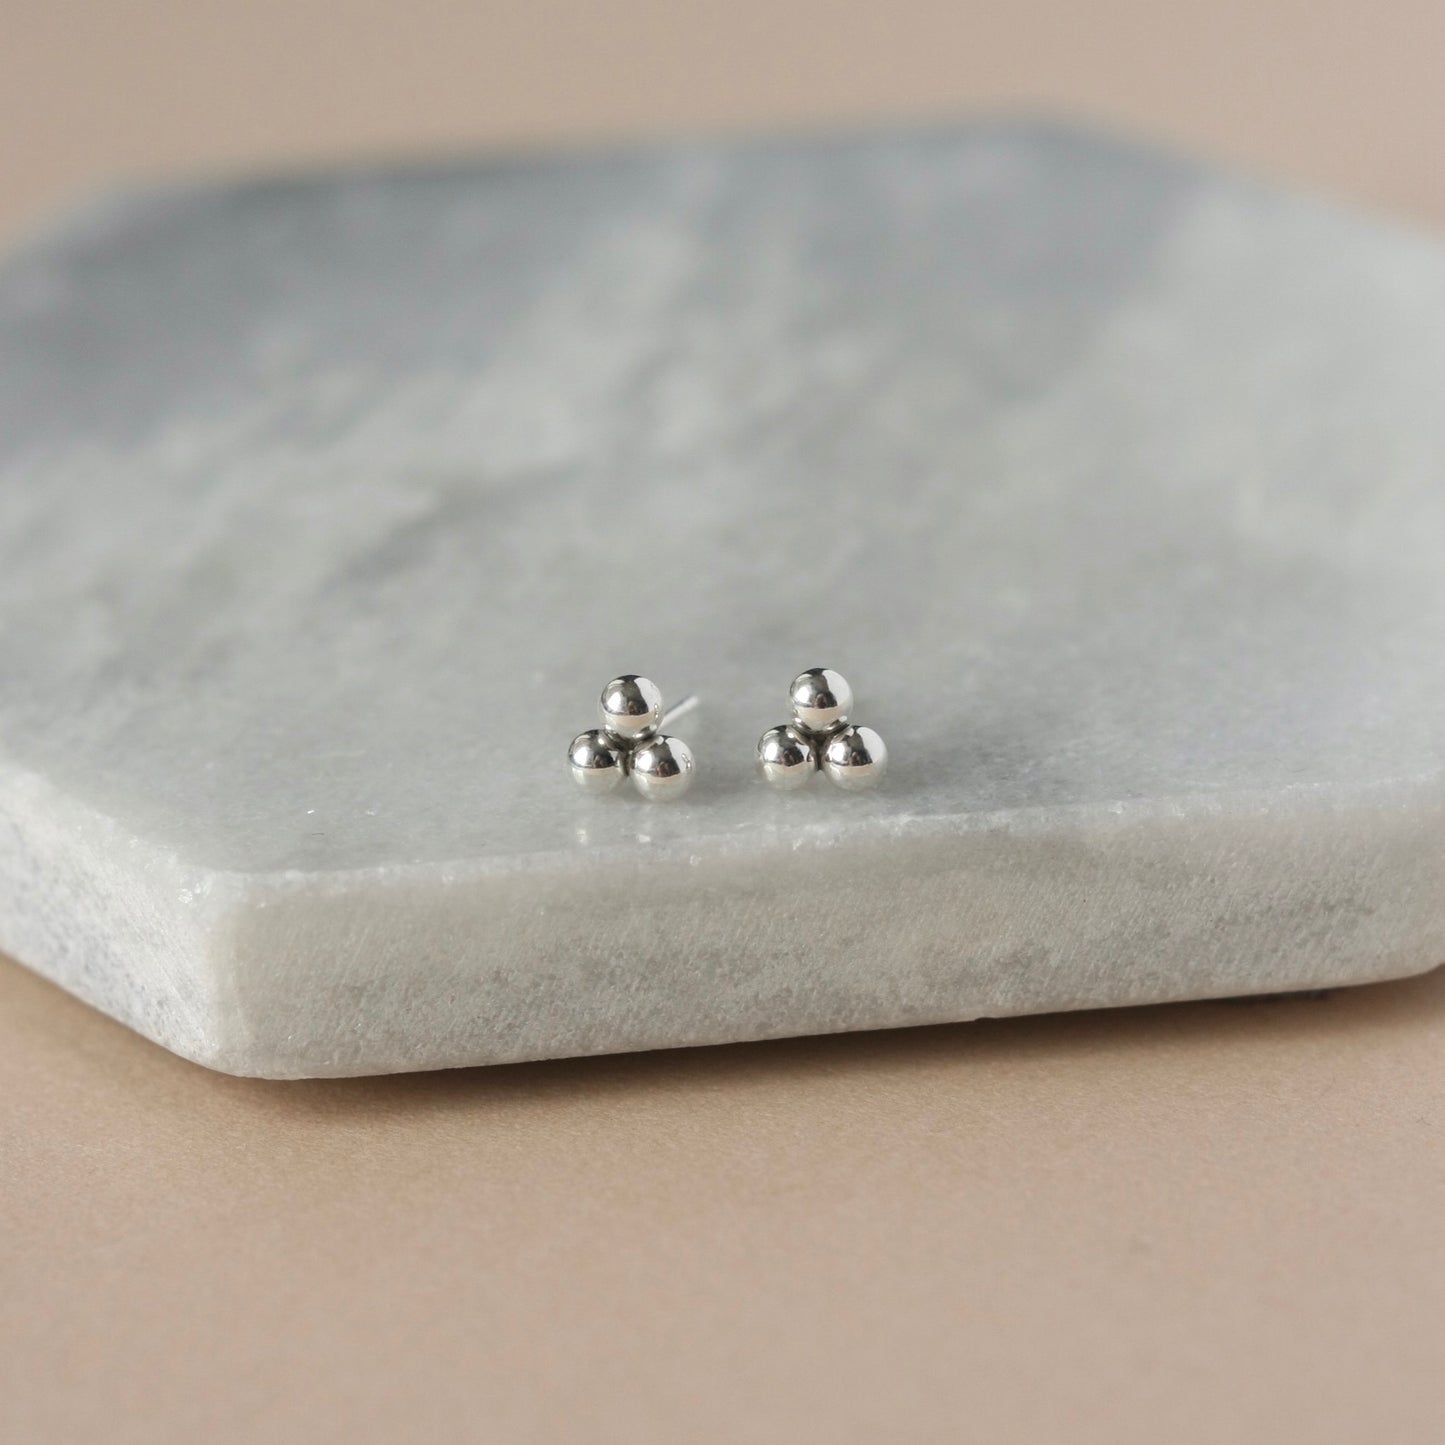 Minimalist Dainty Sterling Silver Dot Stud Earrings